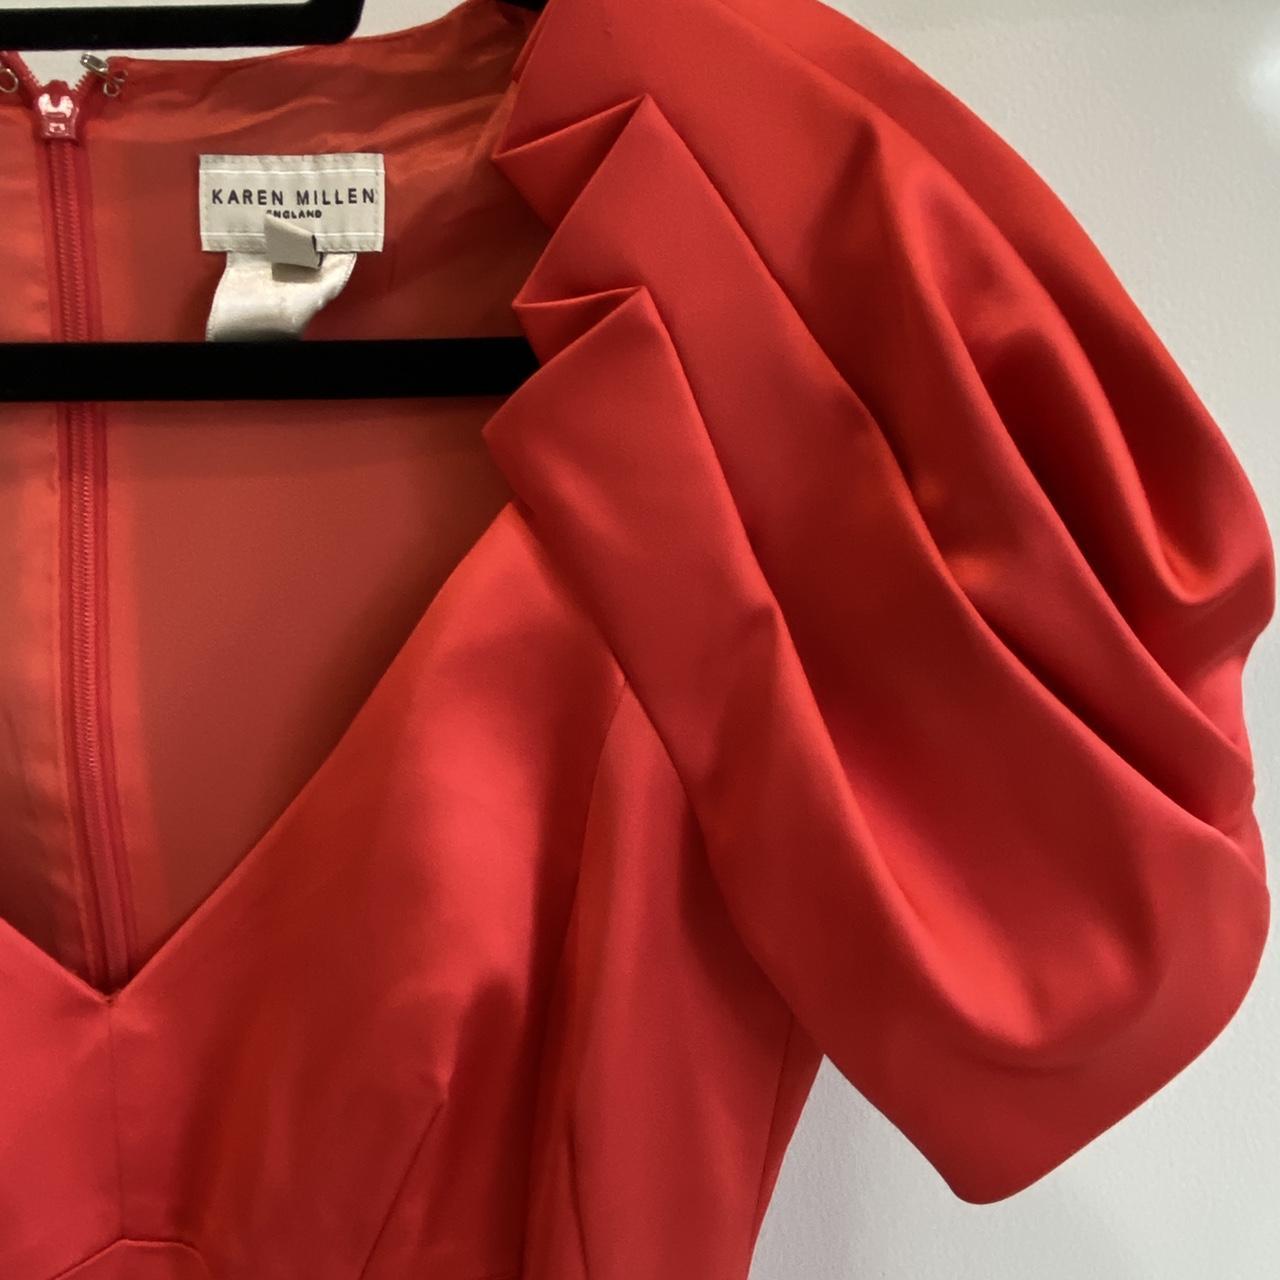 Karen Millen Women's Red Dress (3)